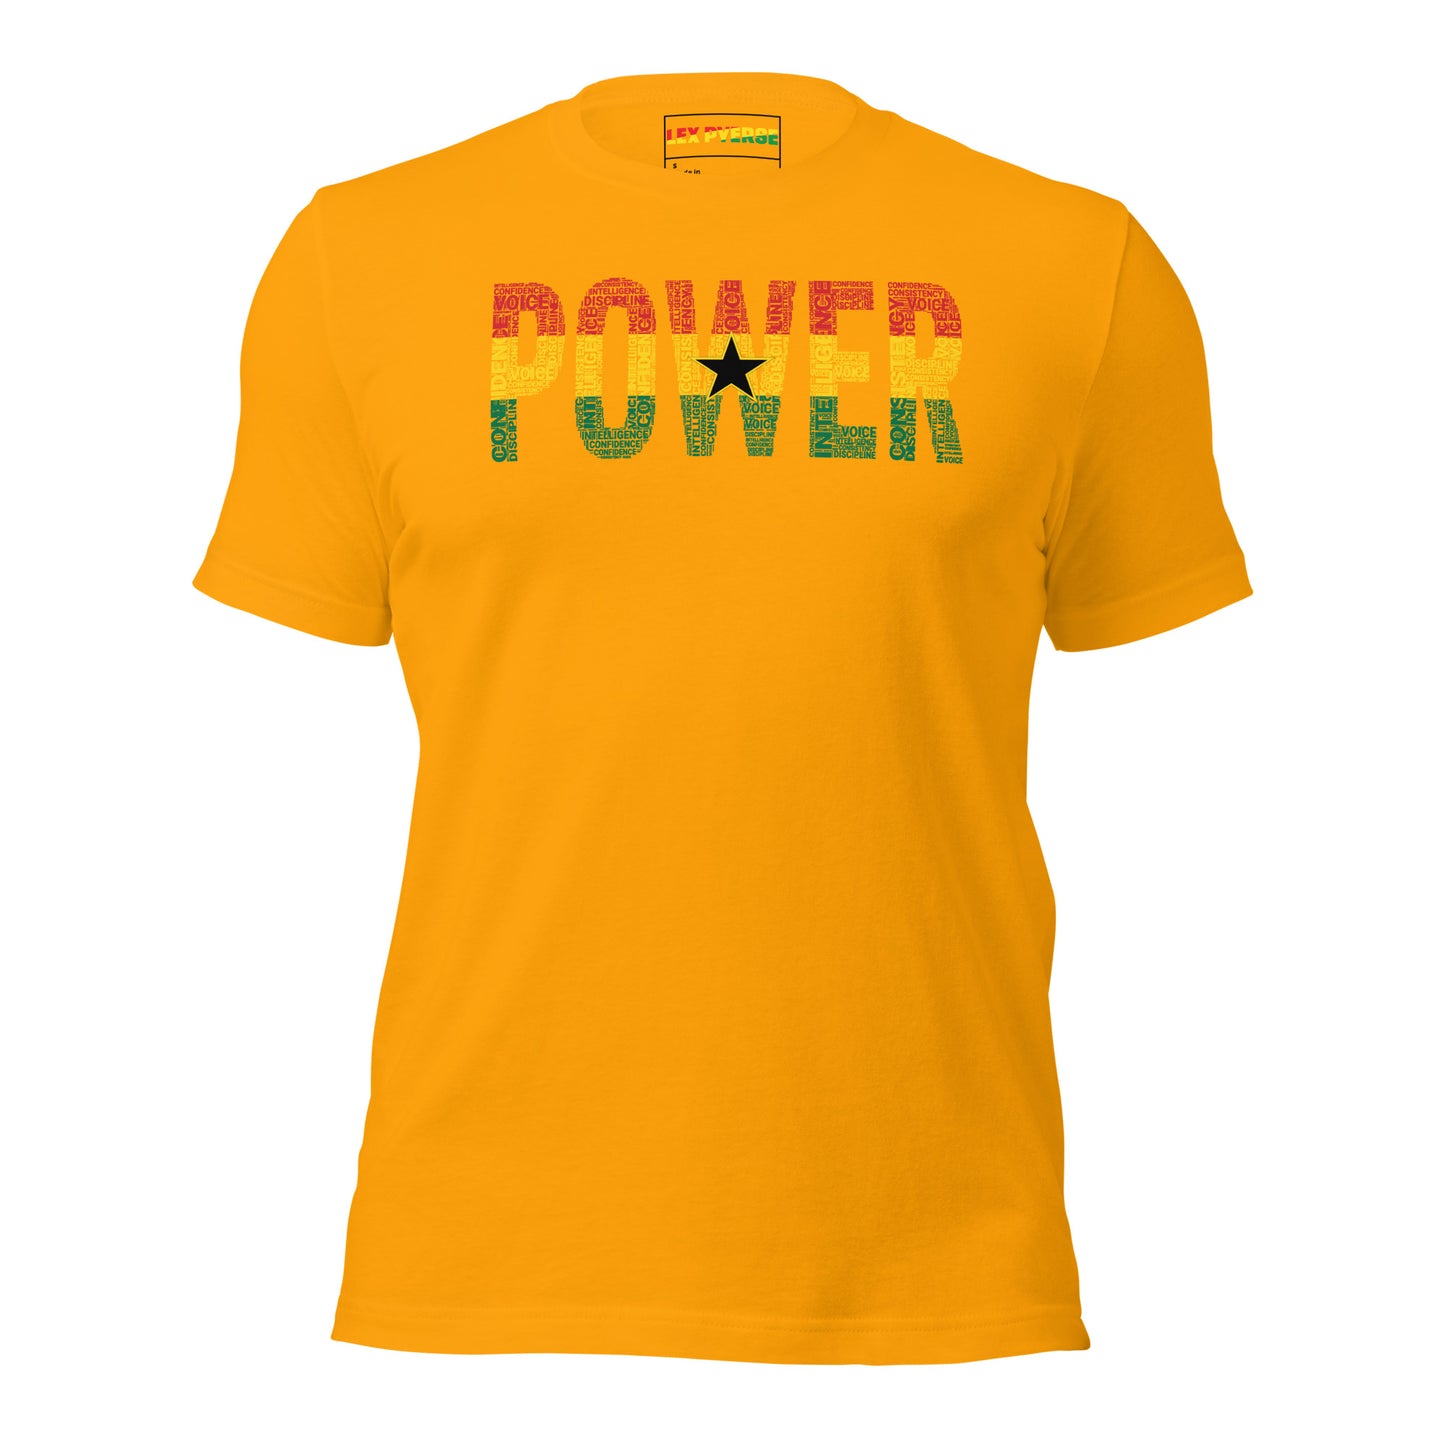 POWER Ghana Inspired Unisex t-shirt